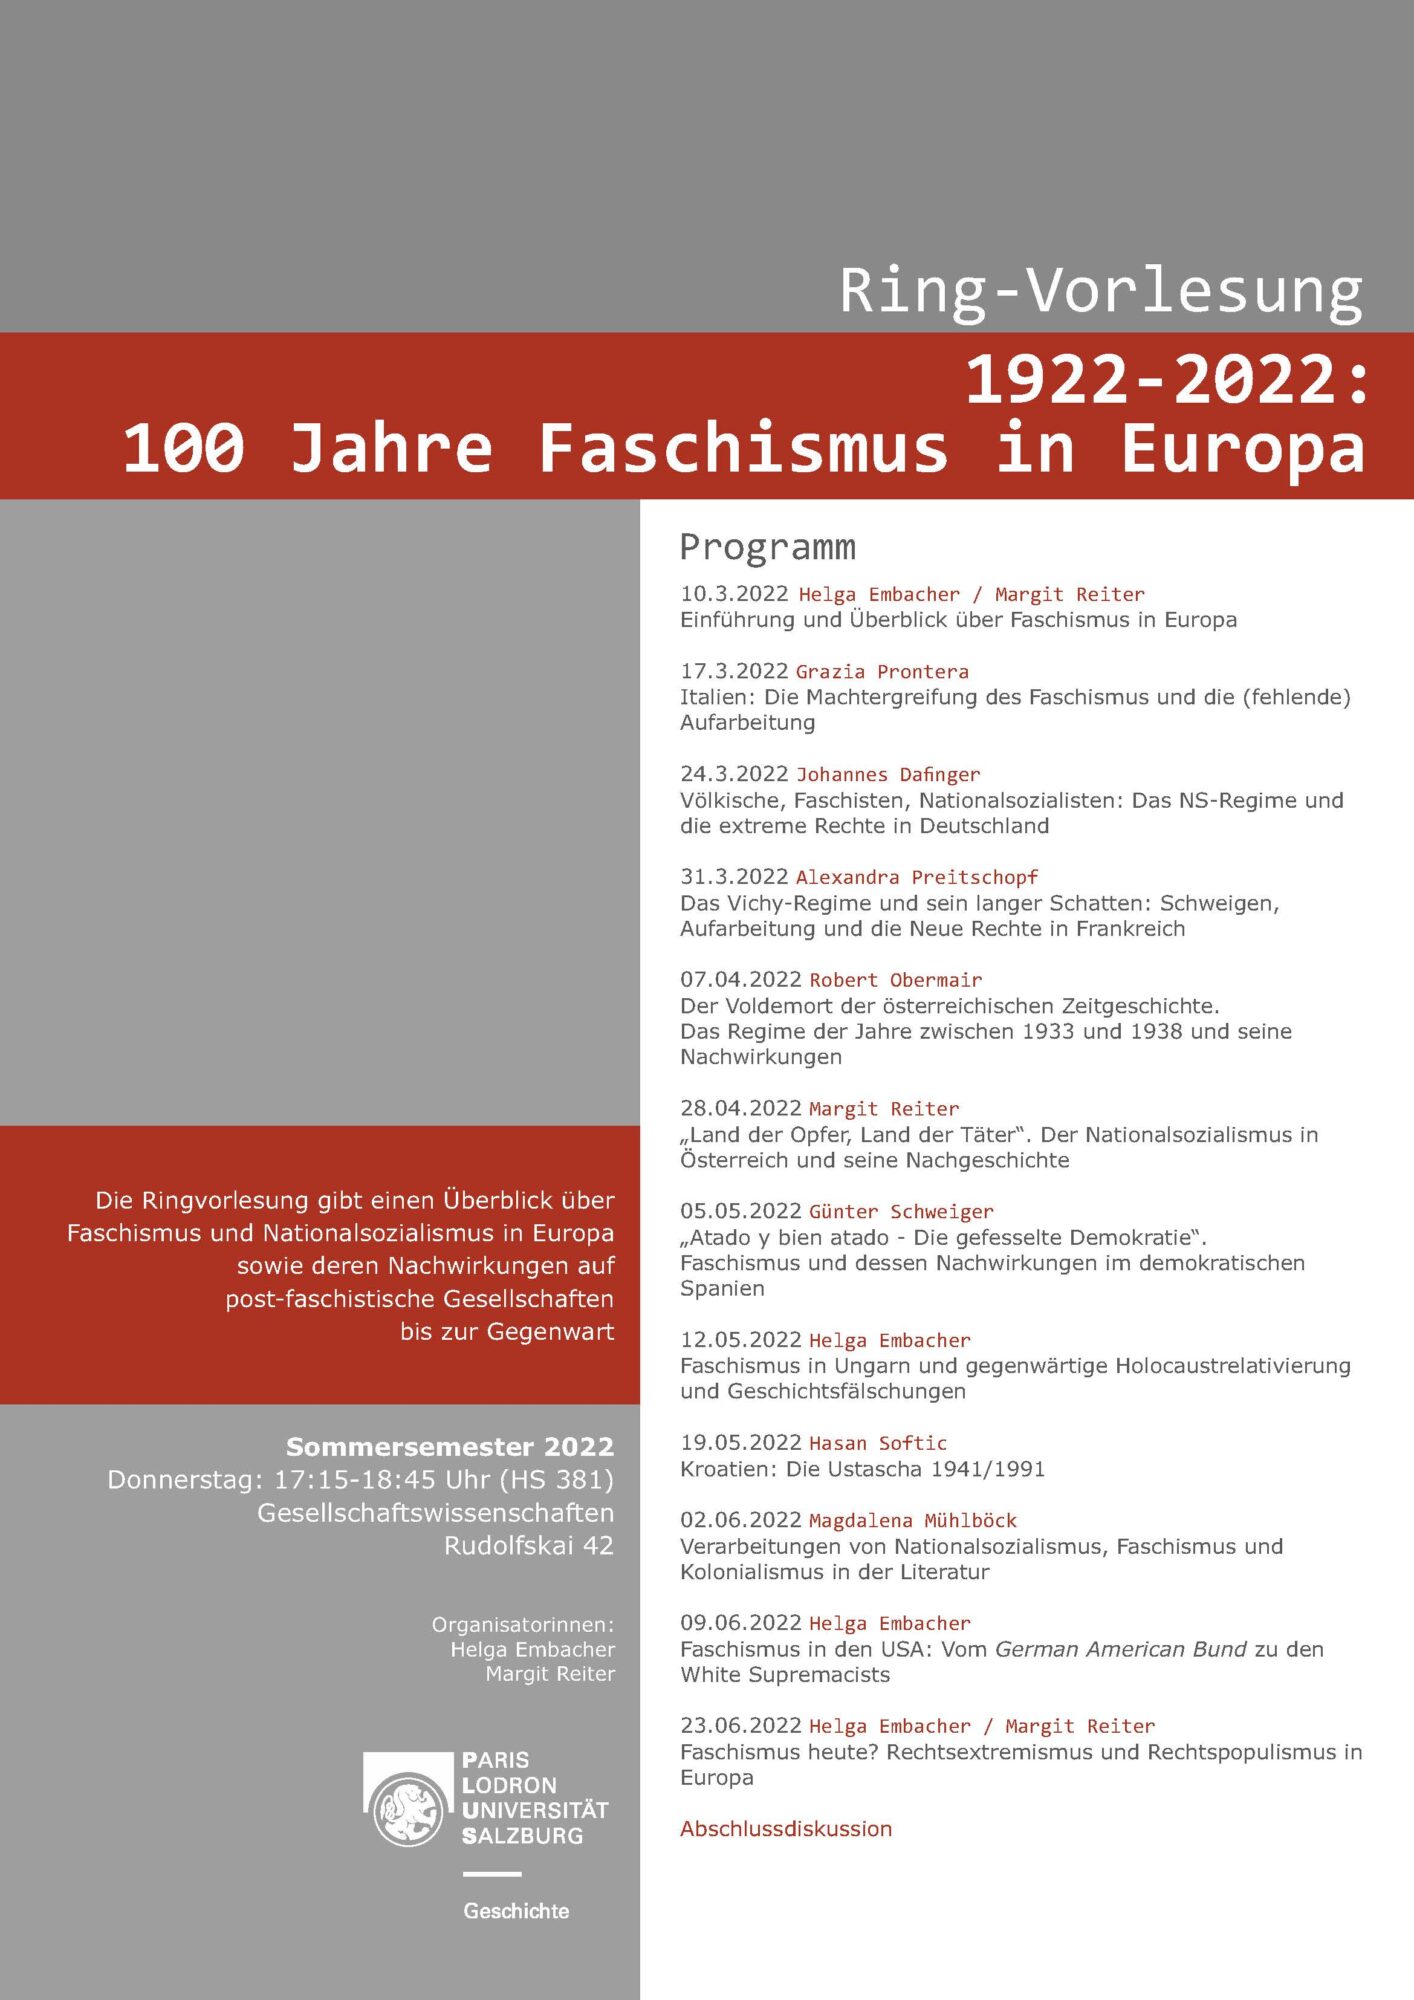 Ringvorlesung: 1922-2022: 100 Jahre Faschismus in Europa